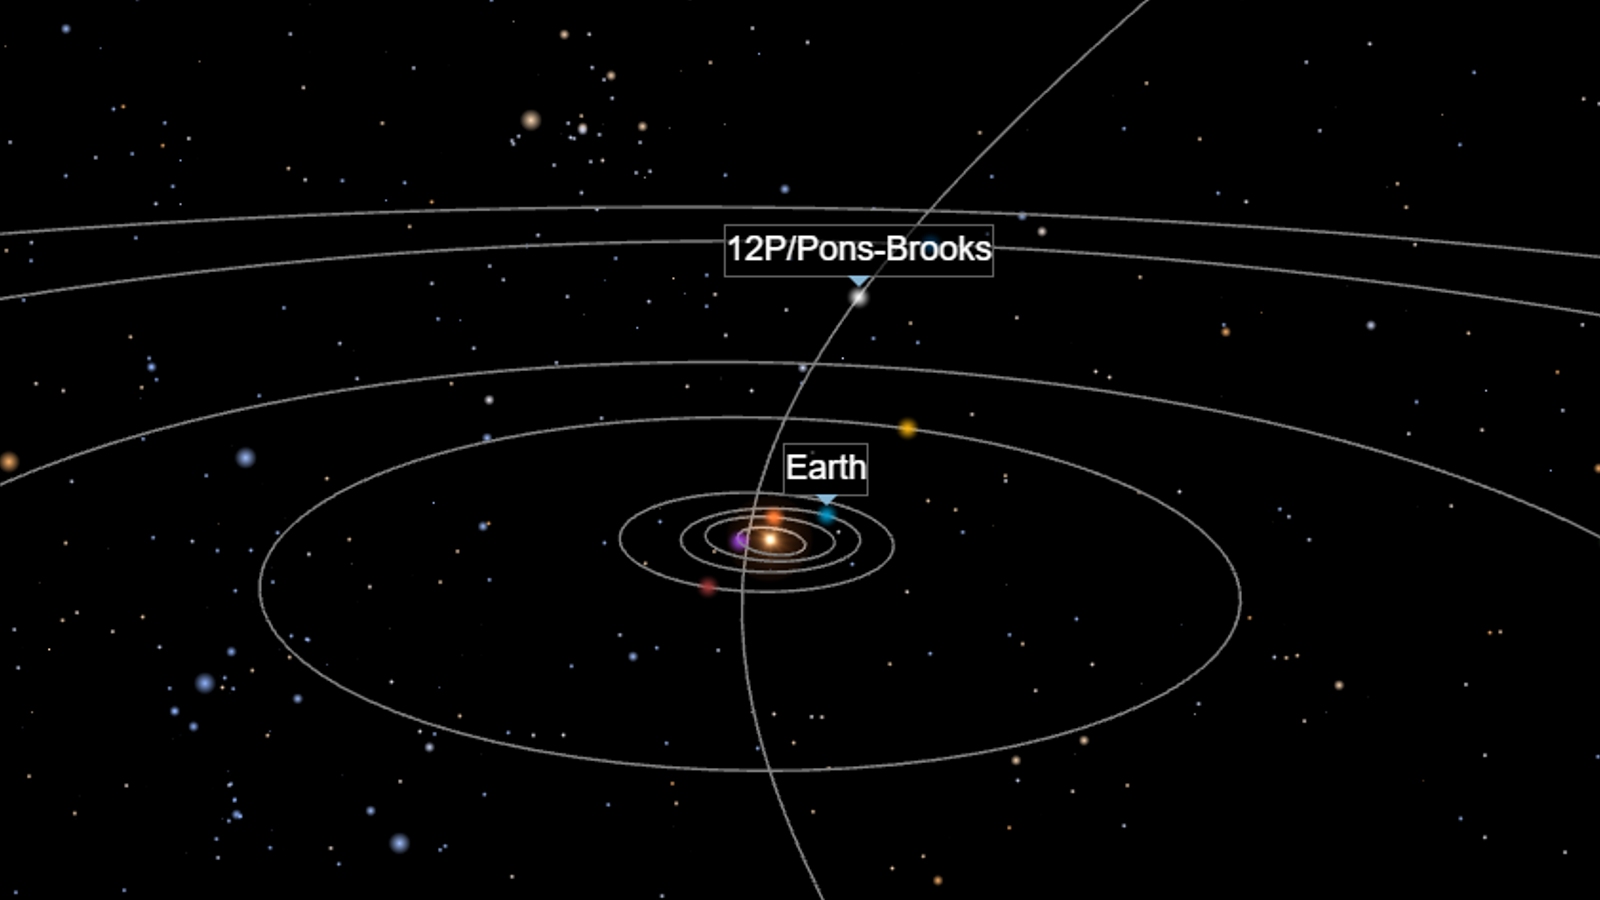 Комета понса брукса траектория. Комета 12p Pons-Brooks. Размеры комет. Комета Понса Брукса. Комета Pons-Brooks Orbit.